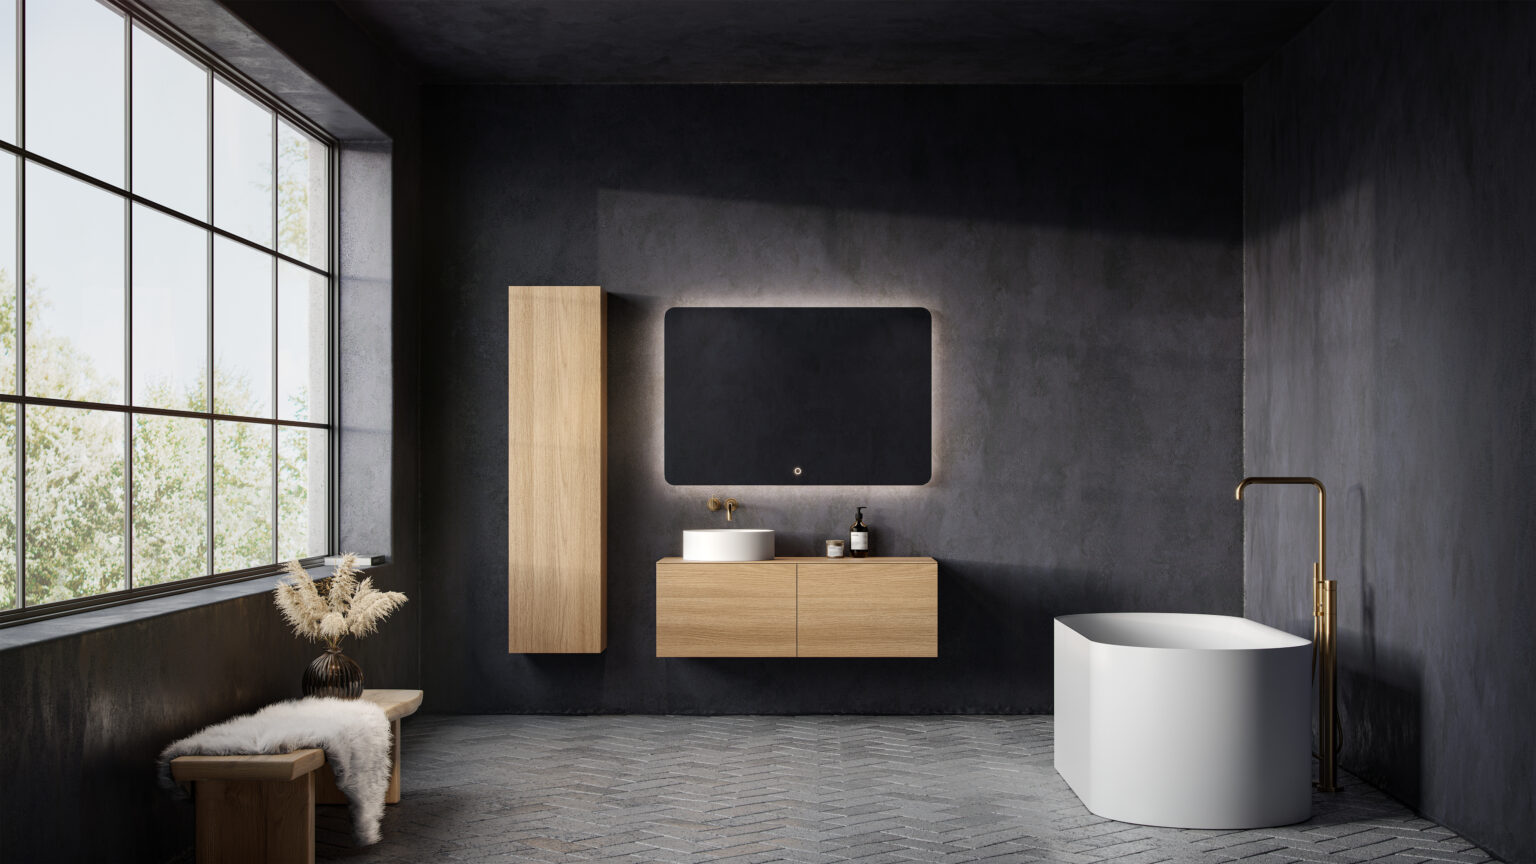 Copenhagen bath moderne skandinavisk design for moderne bad med japandi inspirasjon. Her vises Bergen innredning i lys eik